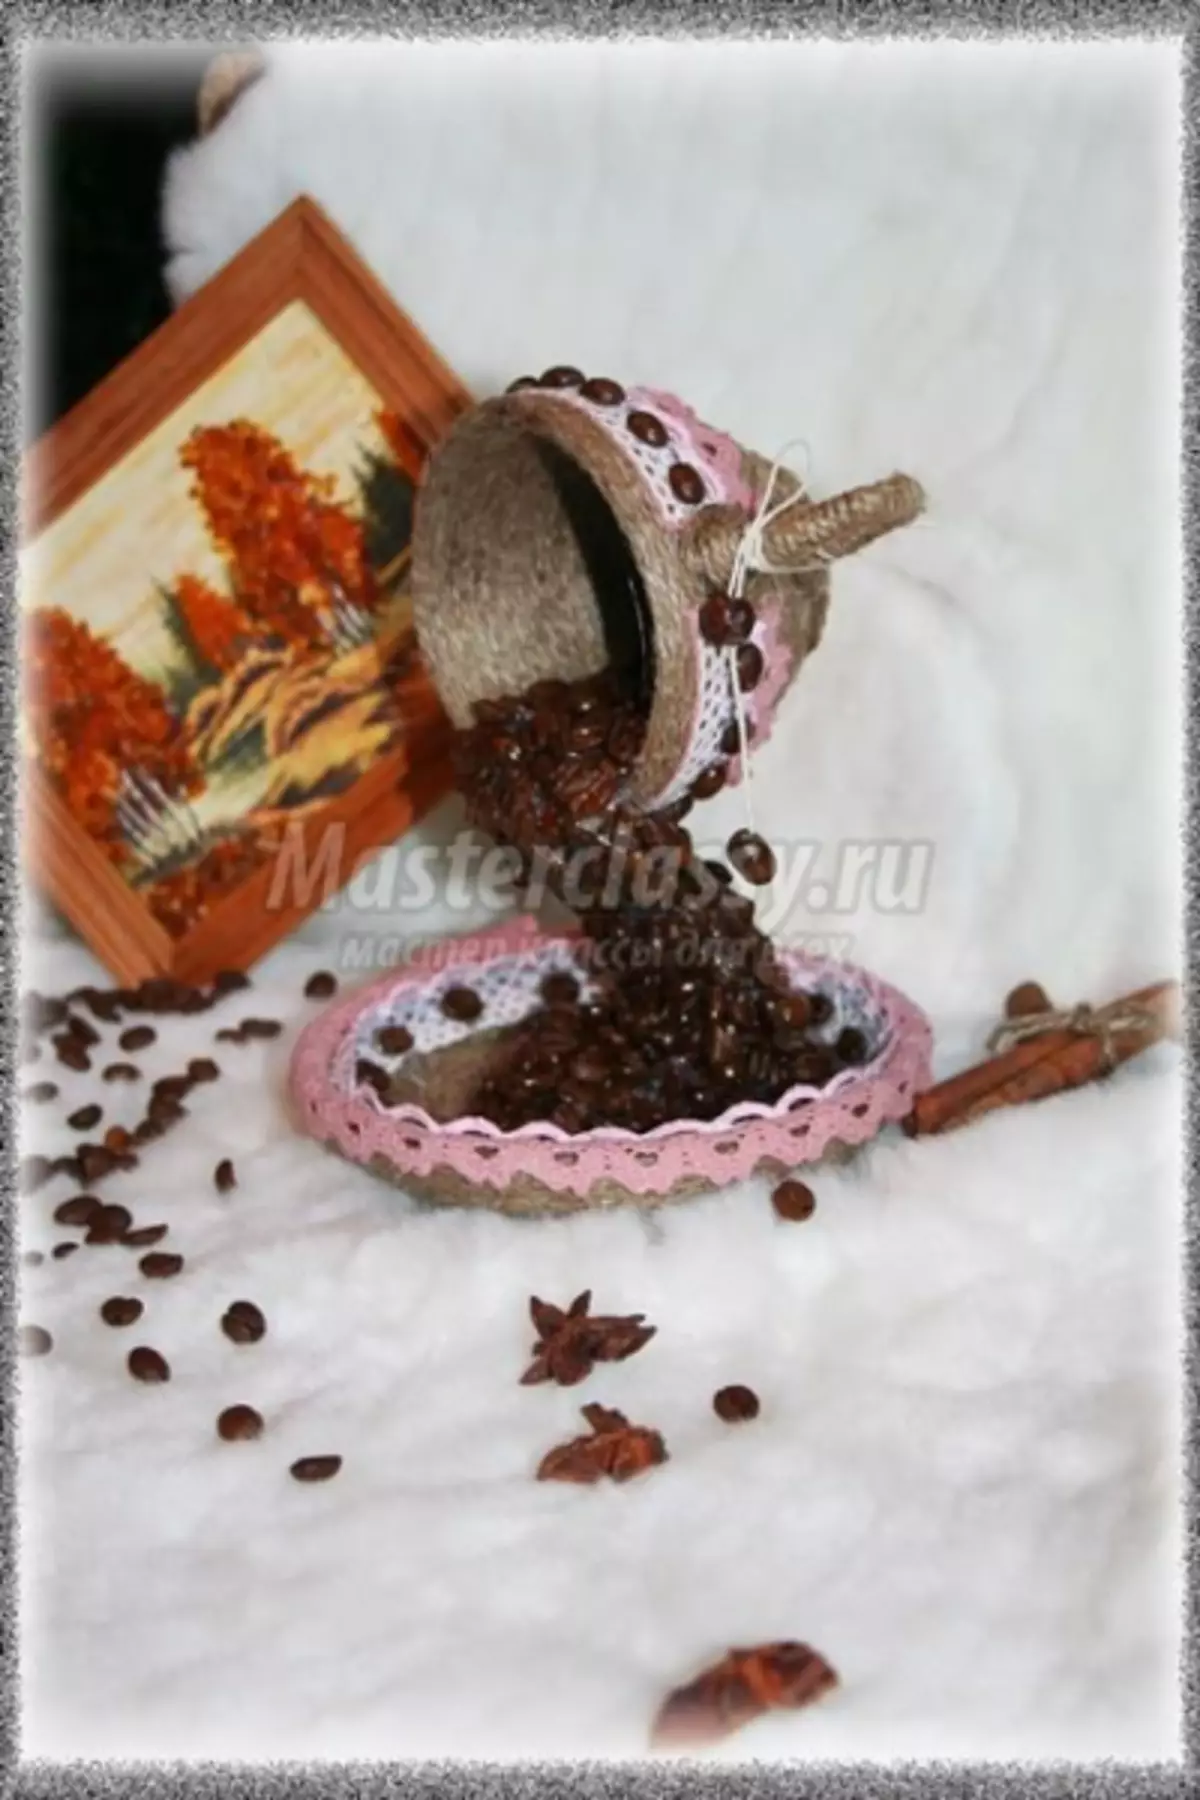 Cốc cà phê từ hạt cà phê tự làm: lớp chính với hình ảnh